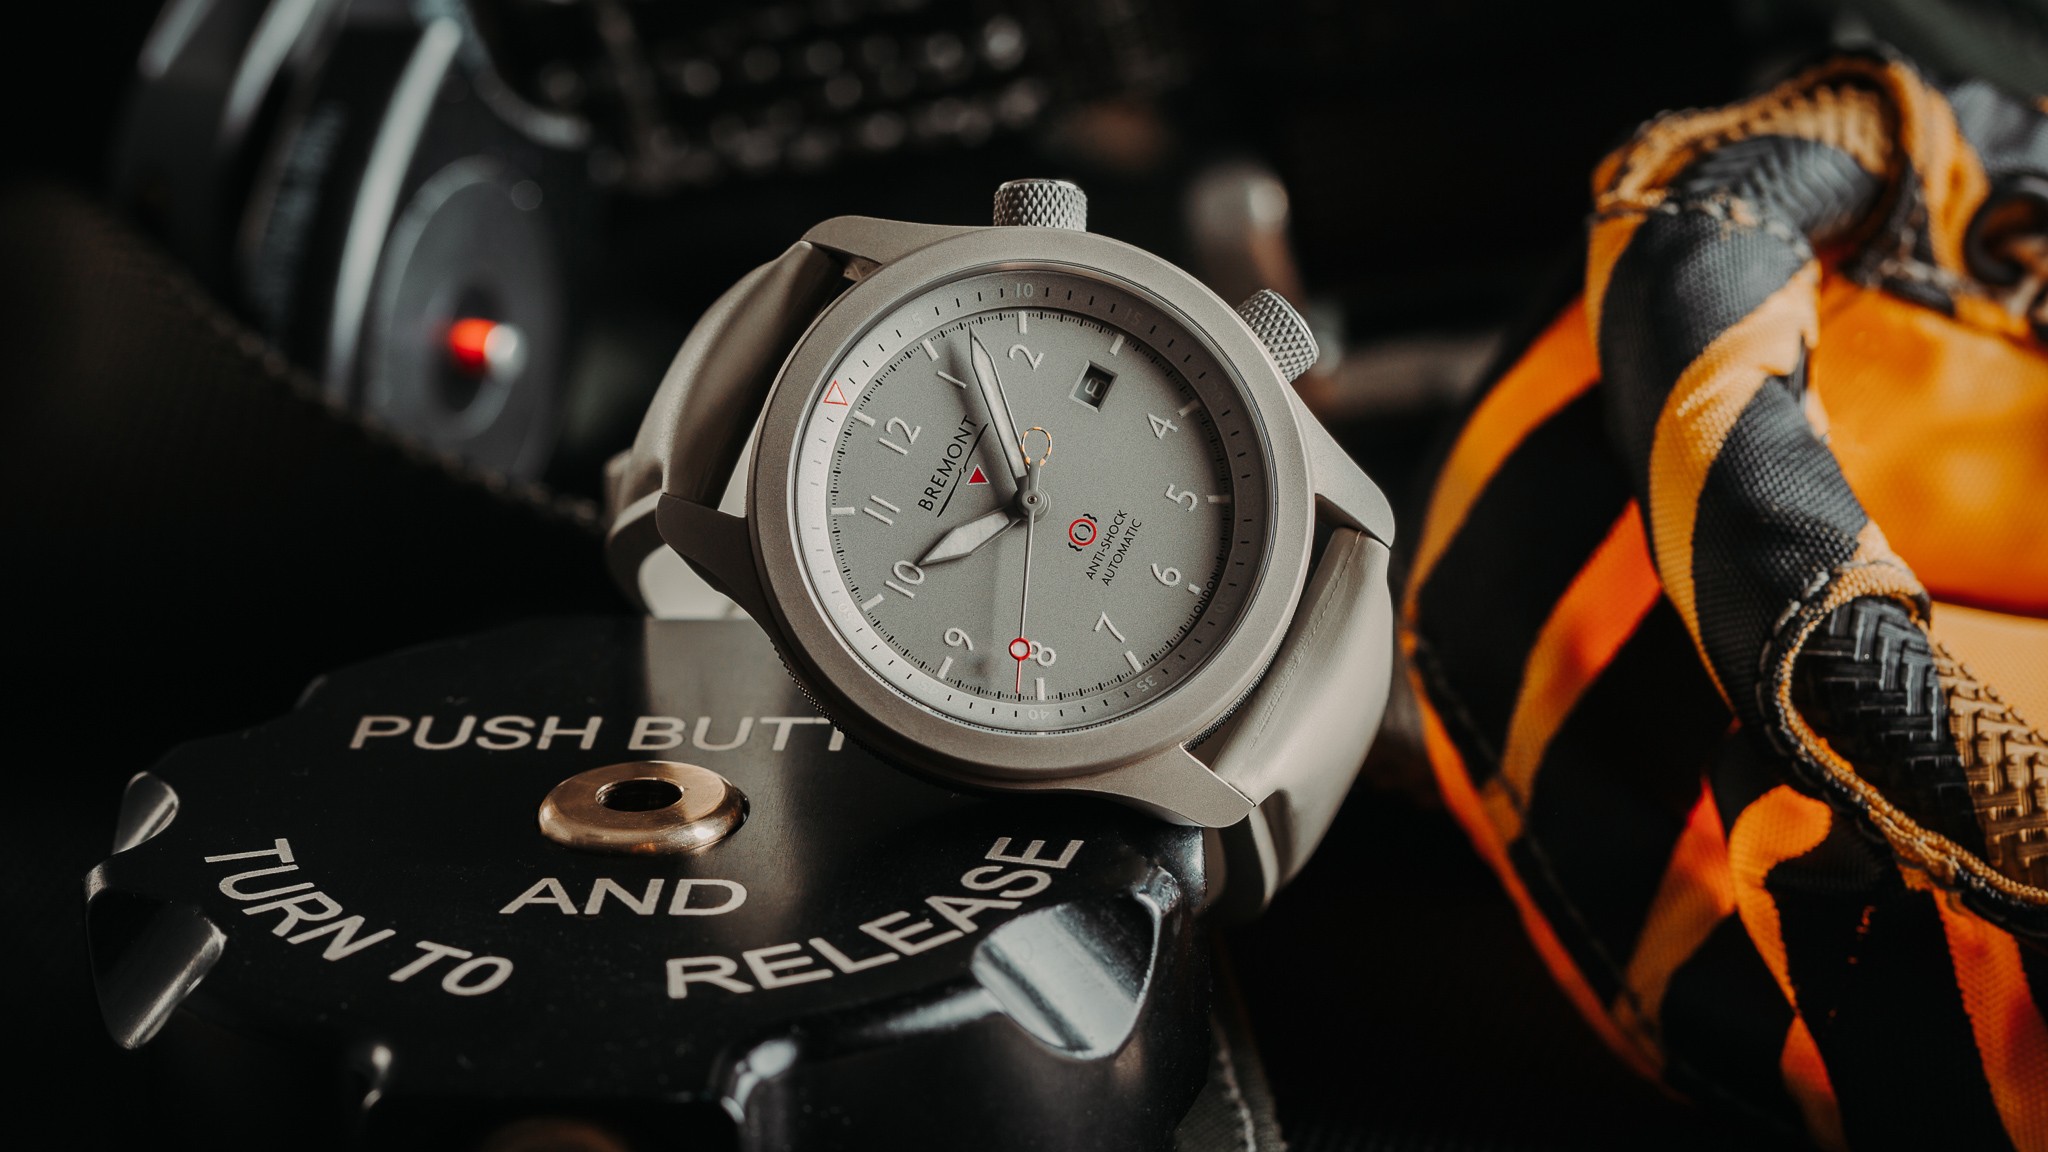 Bremont представляет новые часы MBII Savanna Pilot Watch в титановом корпусе